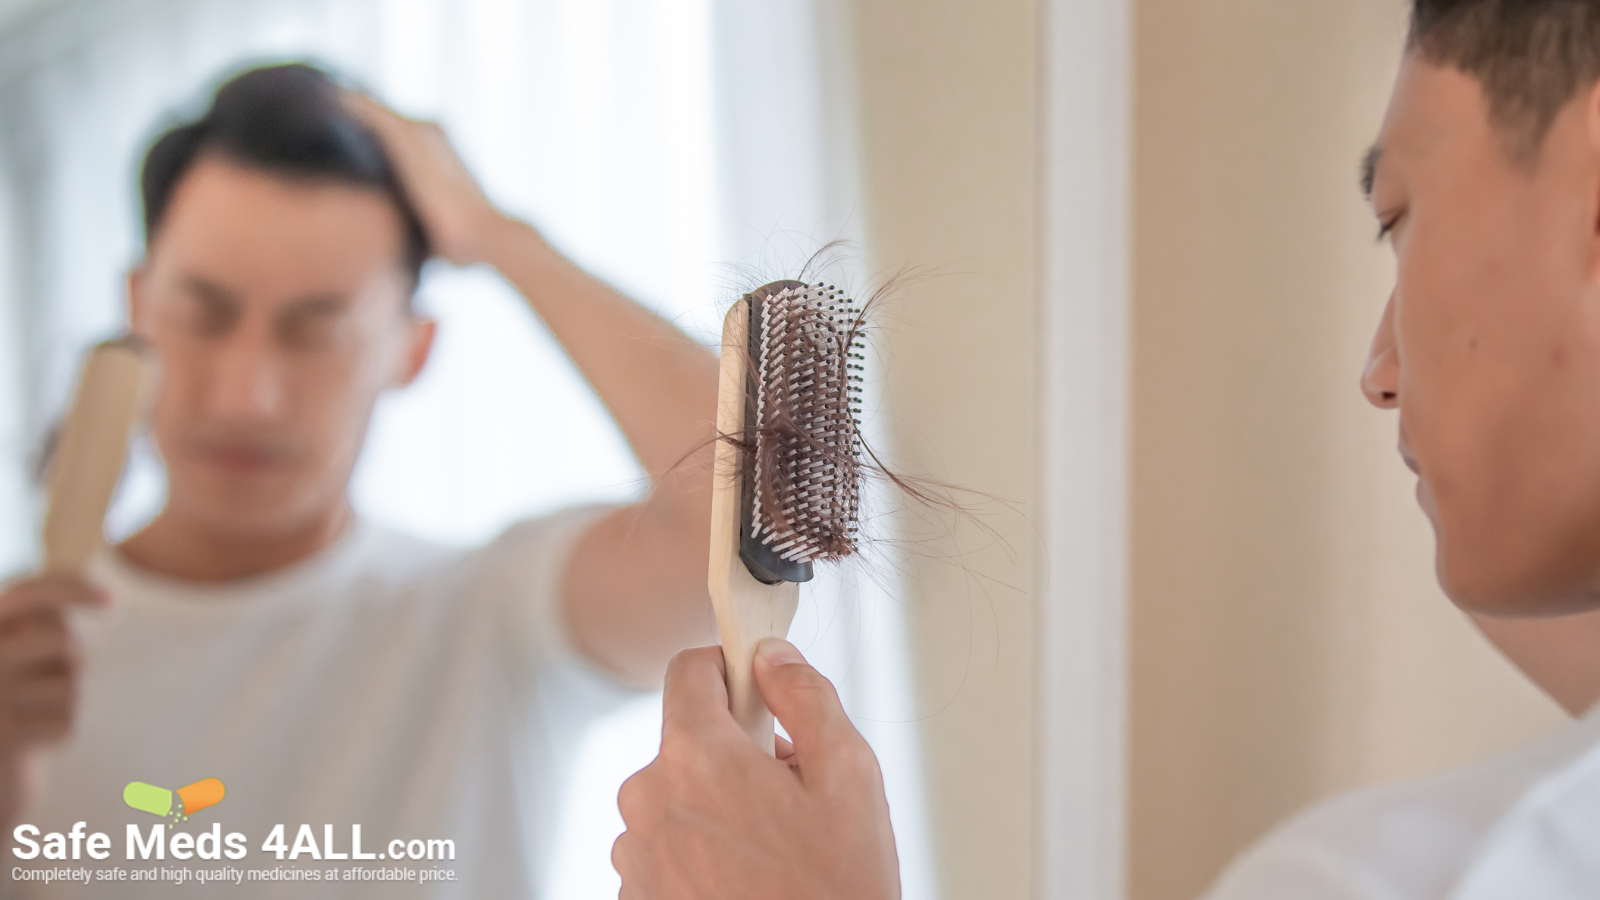 A man looking at his hairbrush